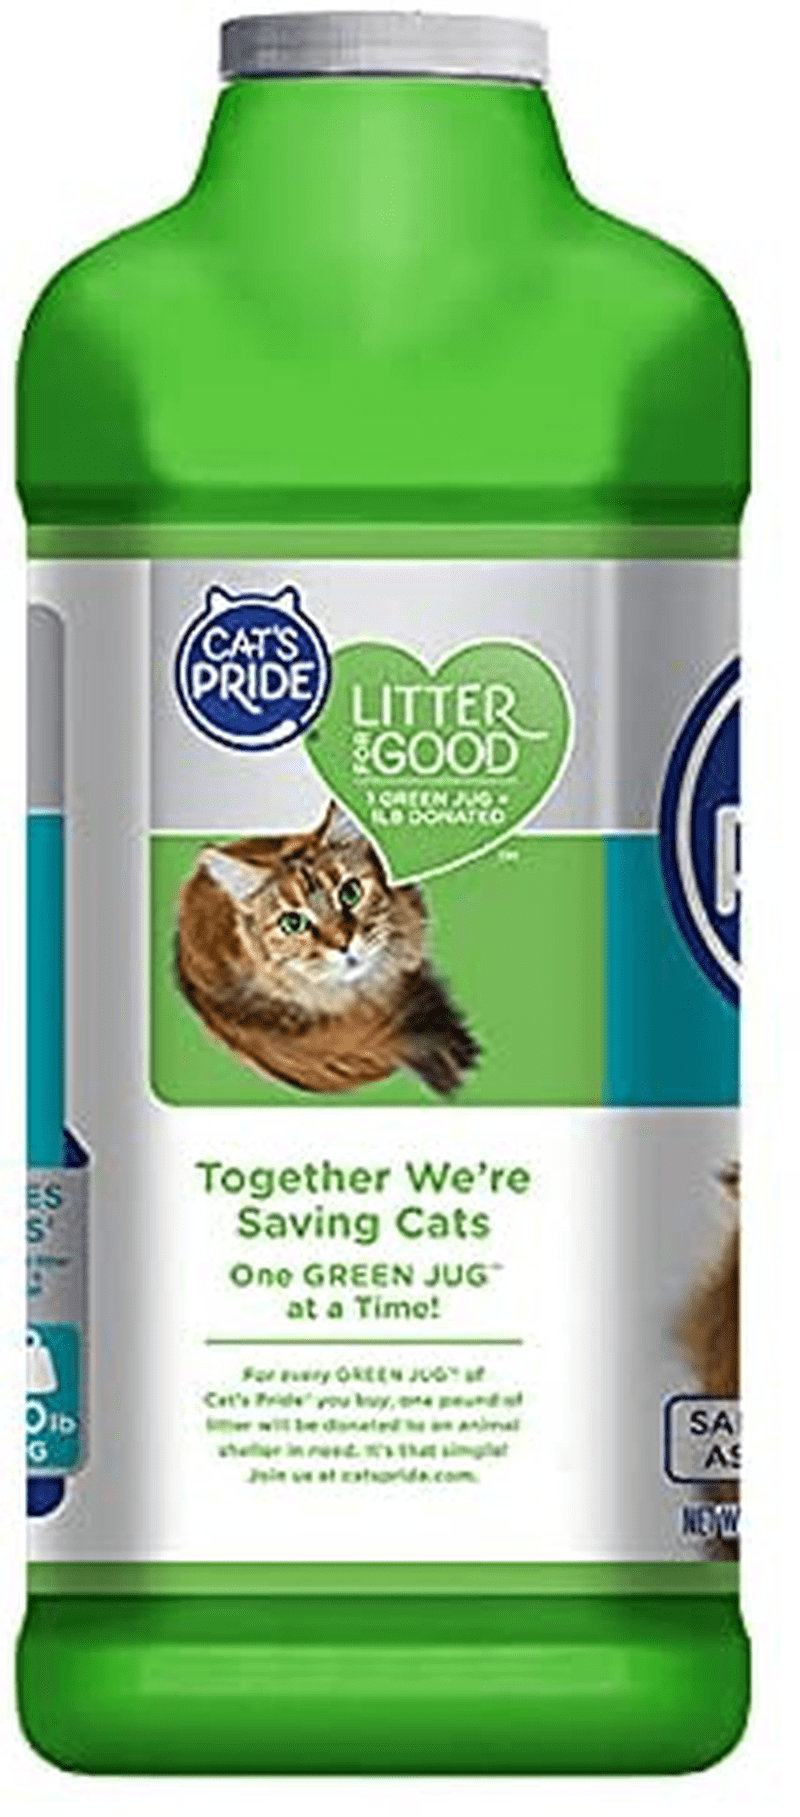 Cat's Pride Multi-Cat Clumping Litter